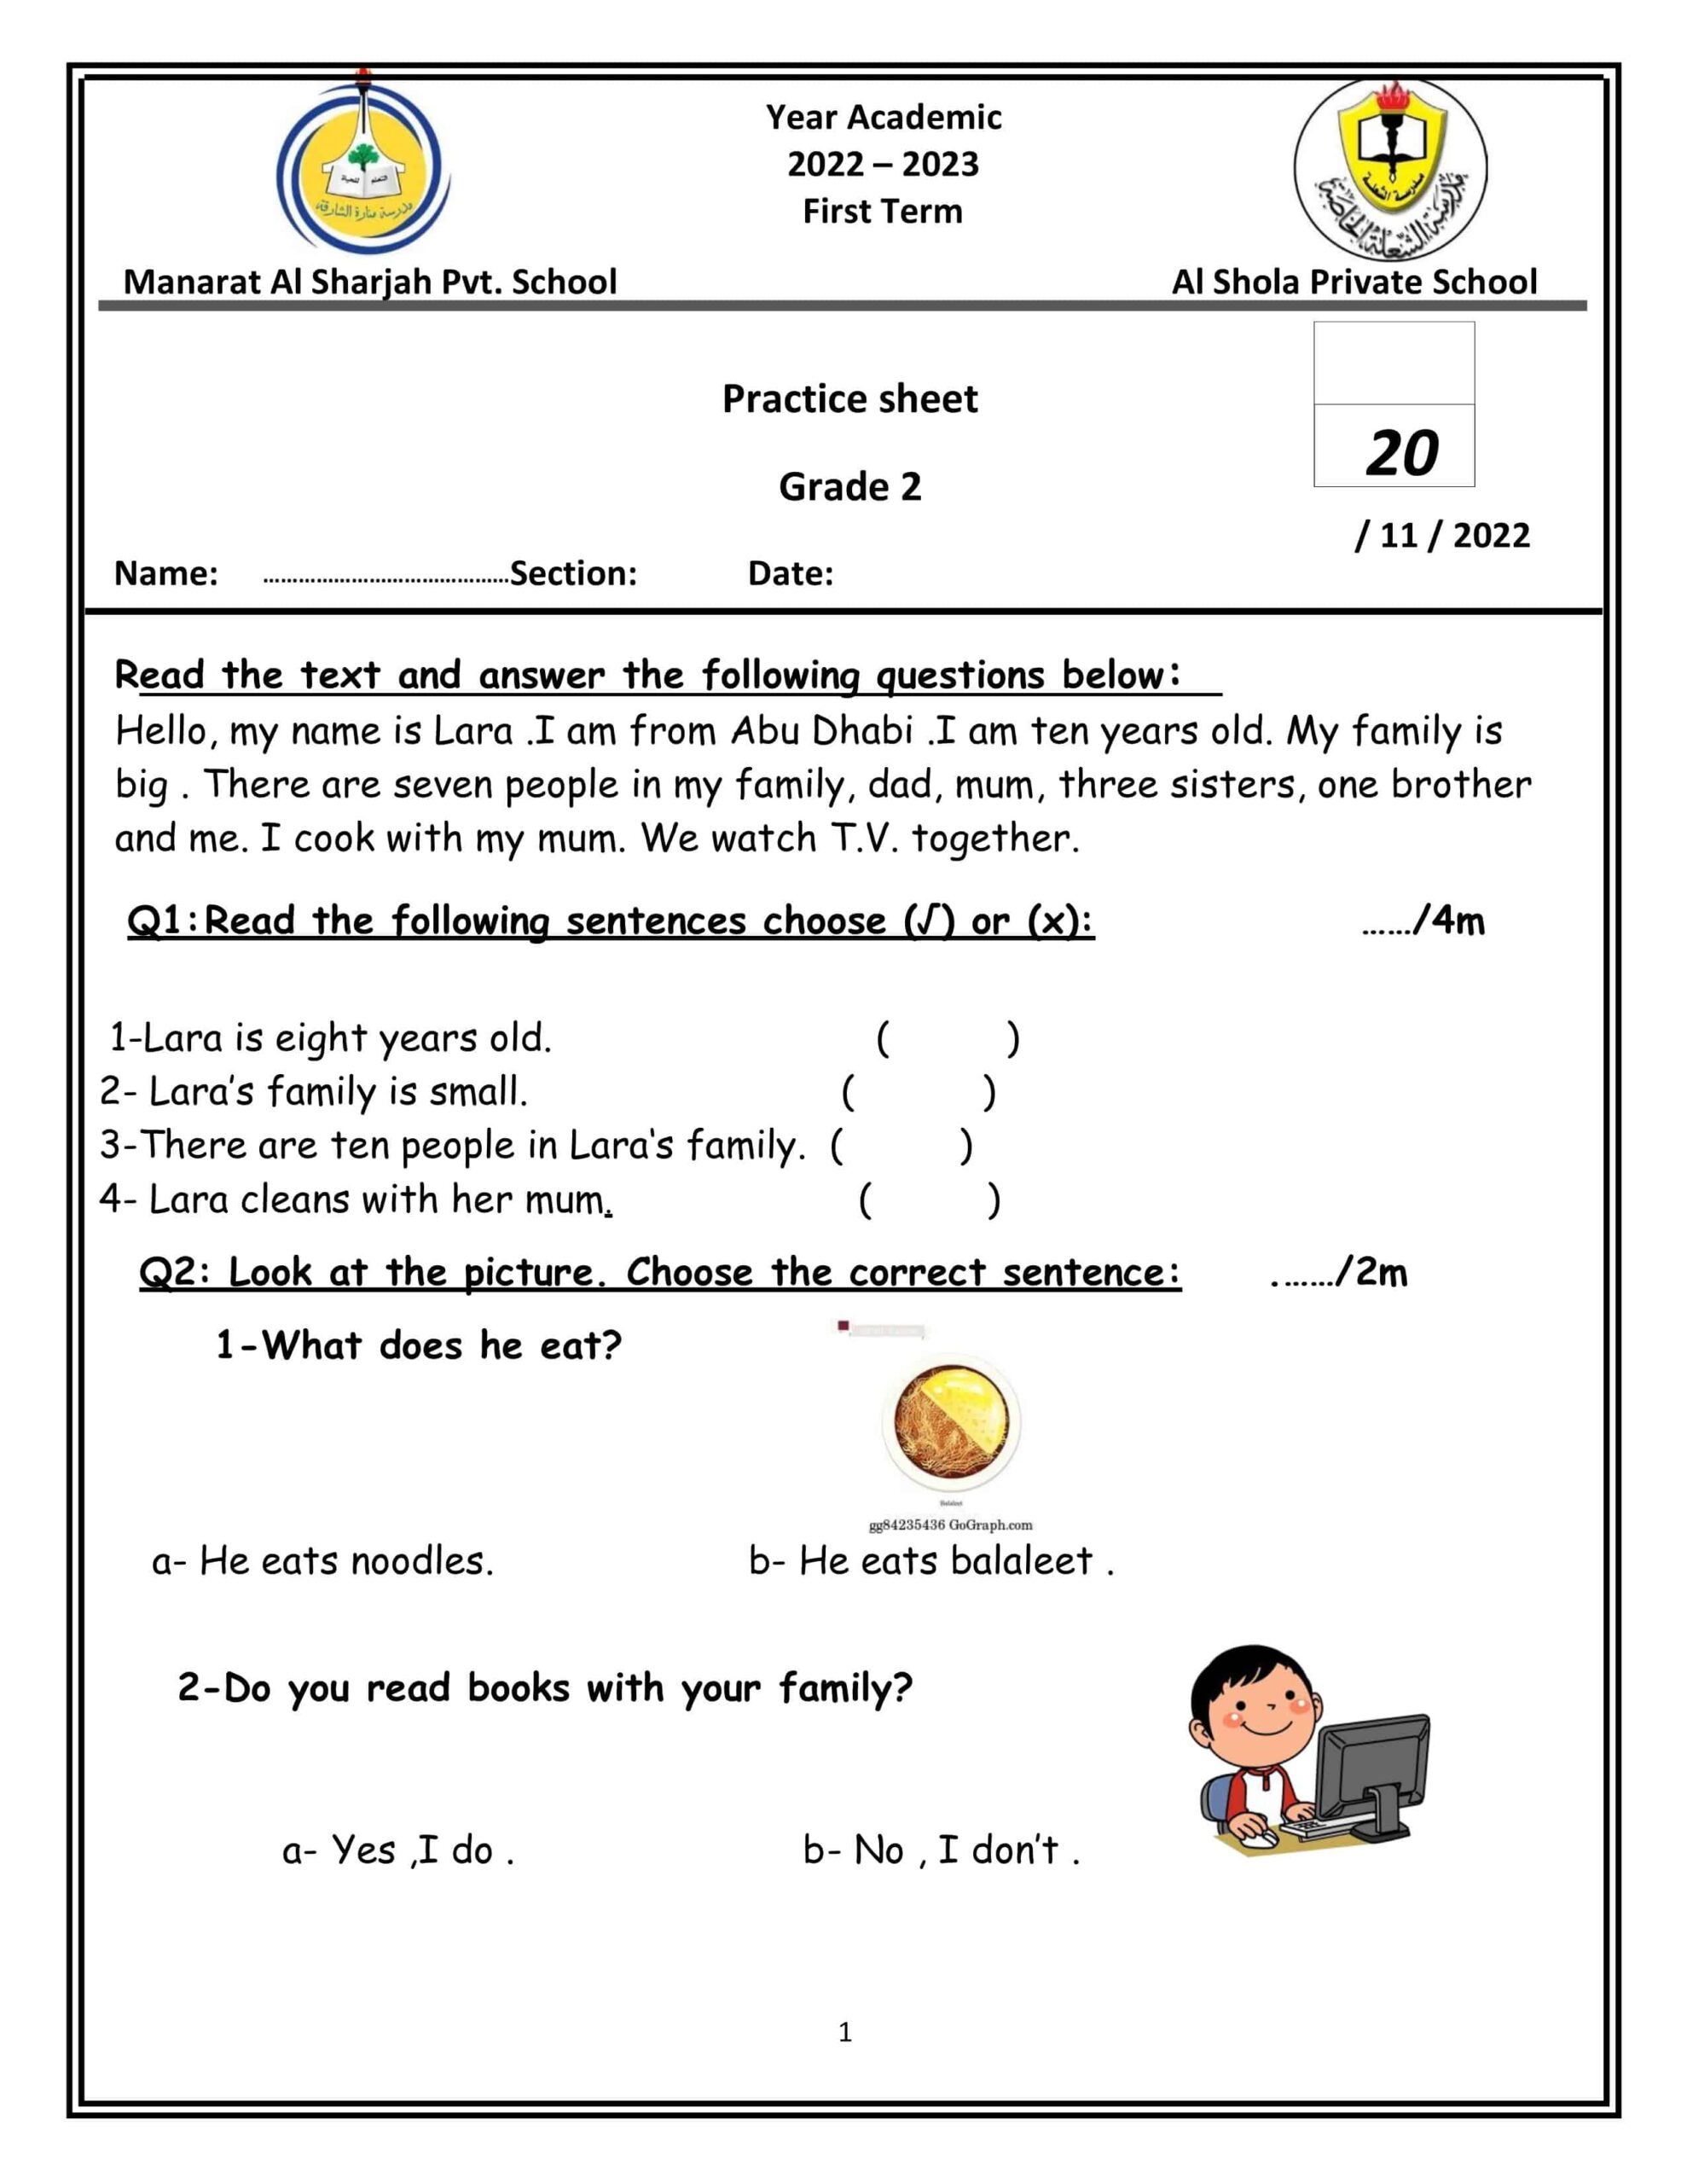 أوراق عمل Practice sheet اللغة الإنجليزية الصف الثاني 